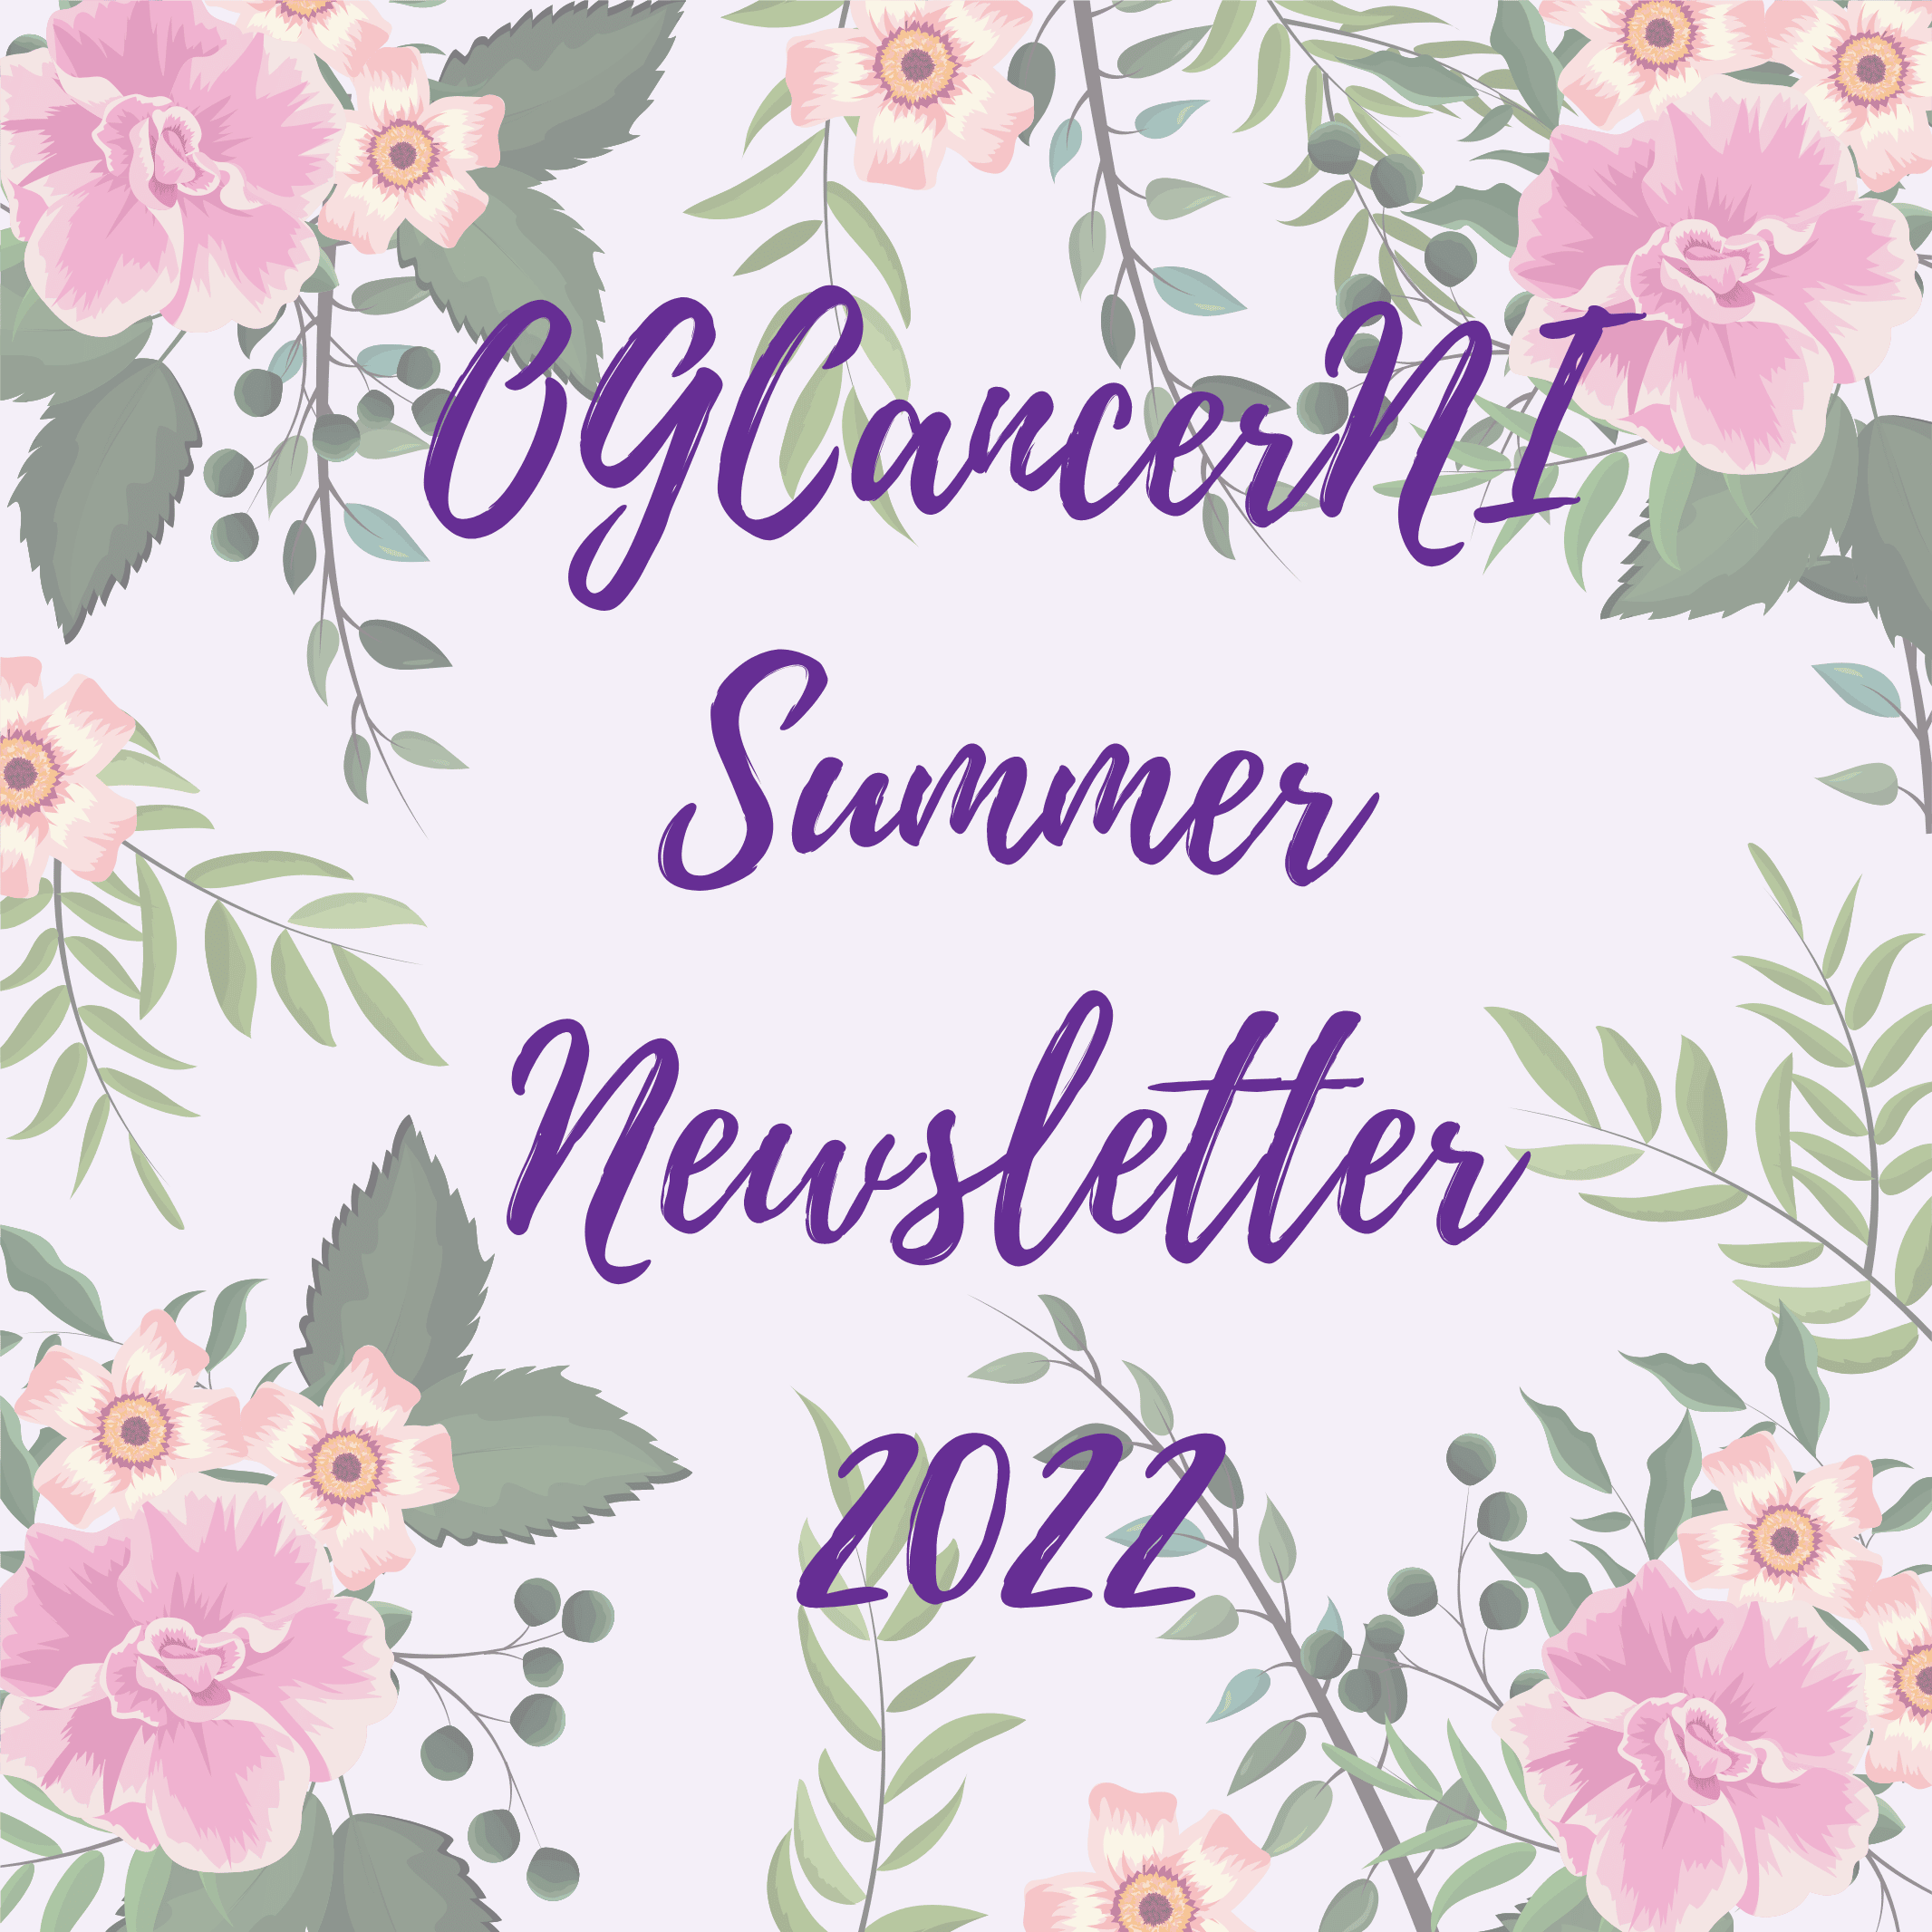 Summer Newsletter 2022